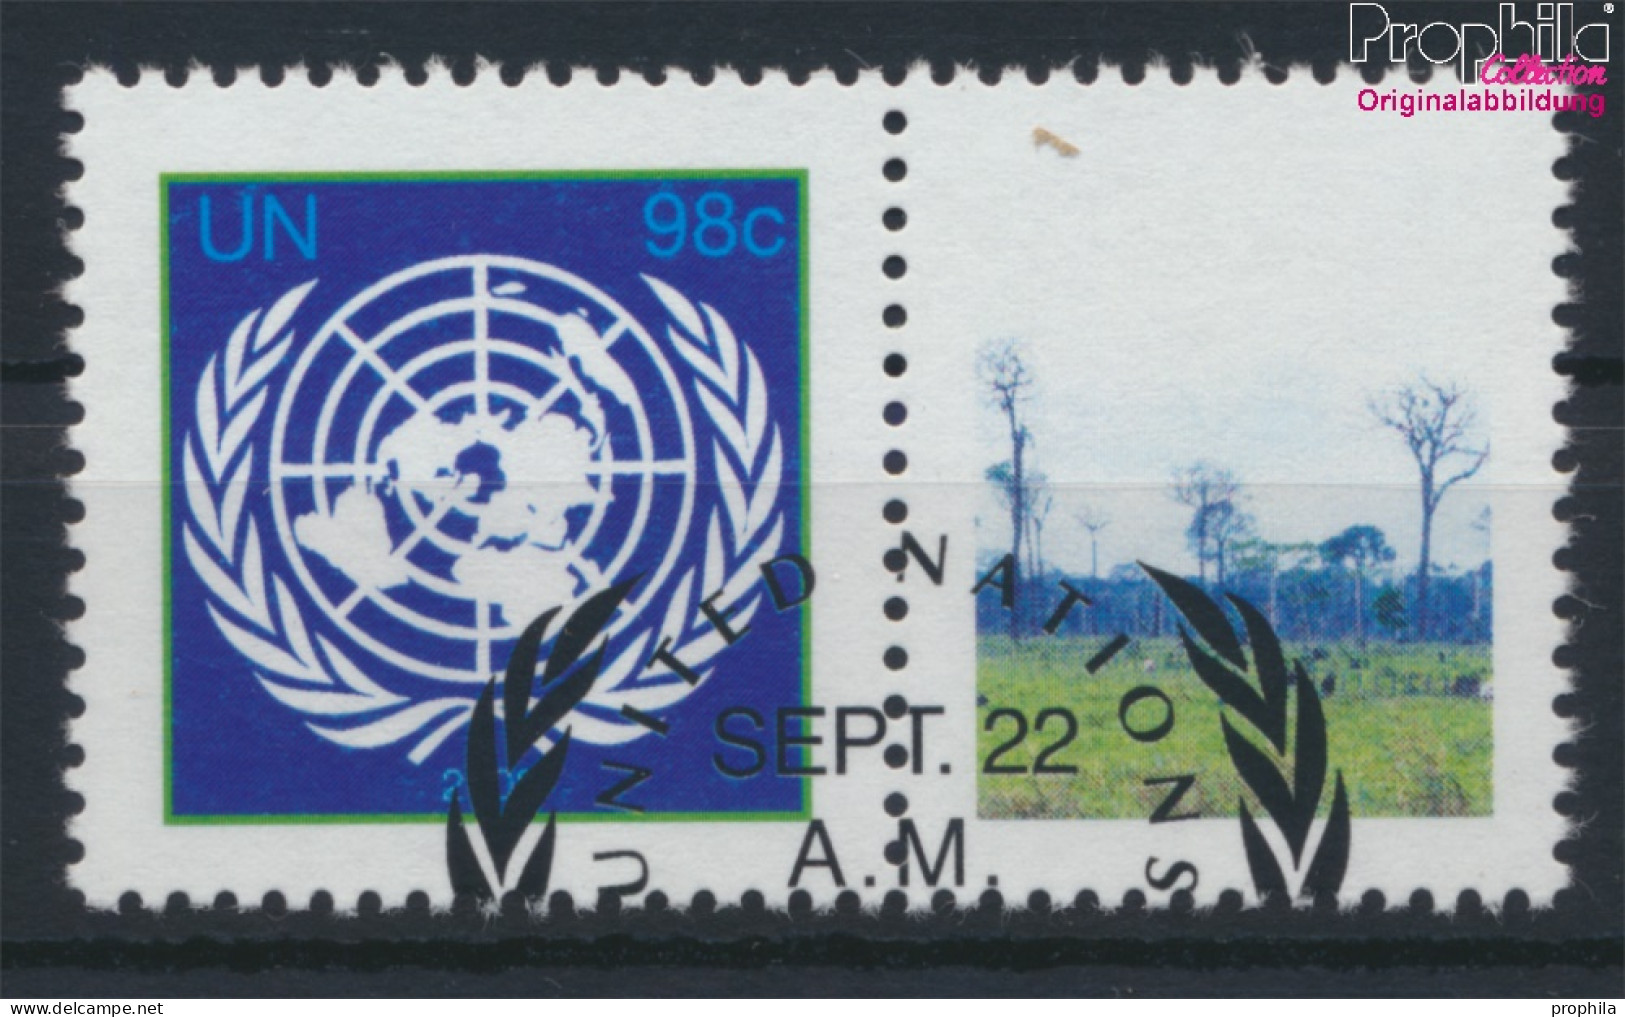 UNO - New York 1161C Zf Mit Zierfeld (kompl.Ausg.) Gestempelt 2009 Klimagipfel (10063435 - Used Stamps